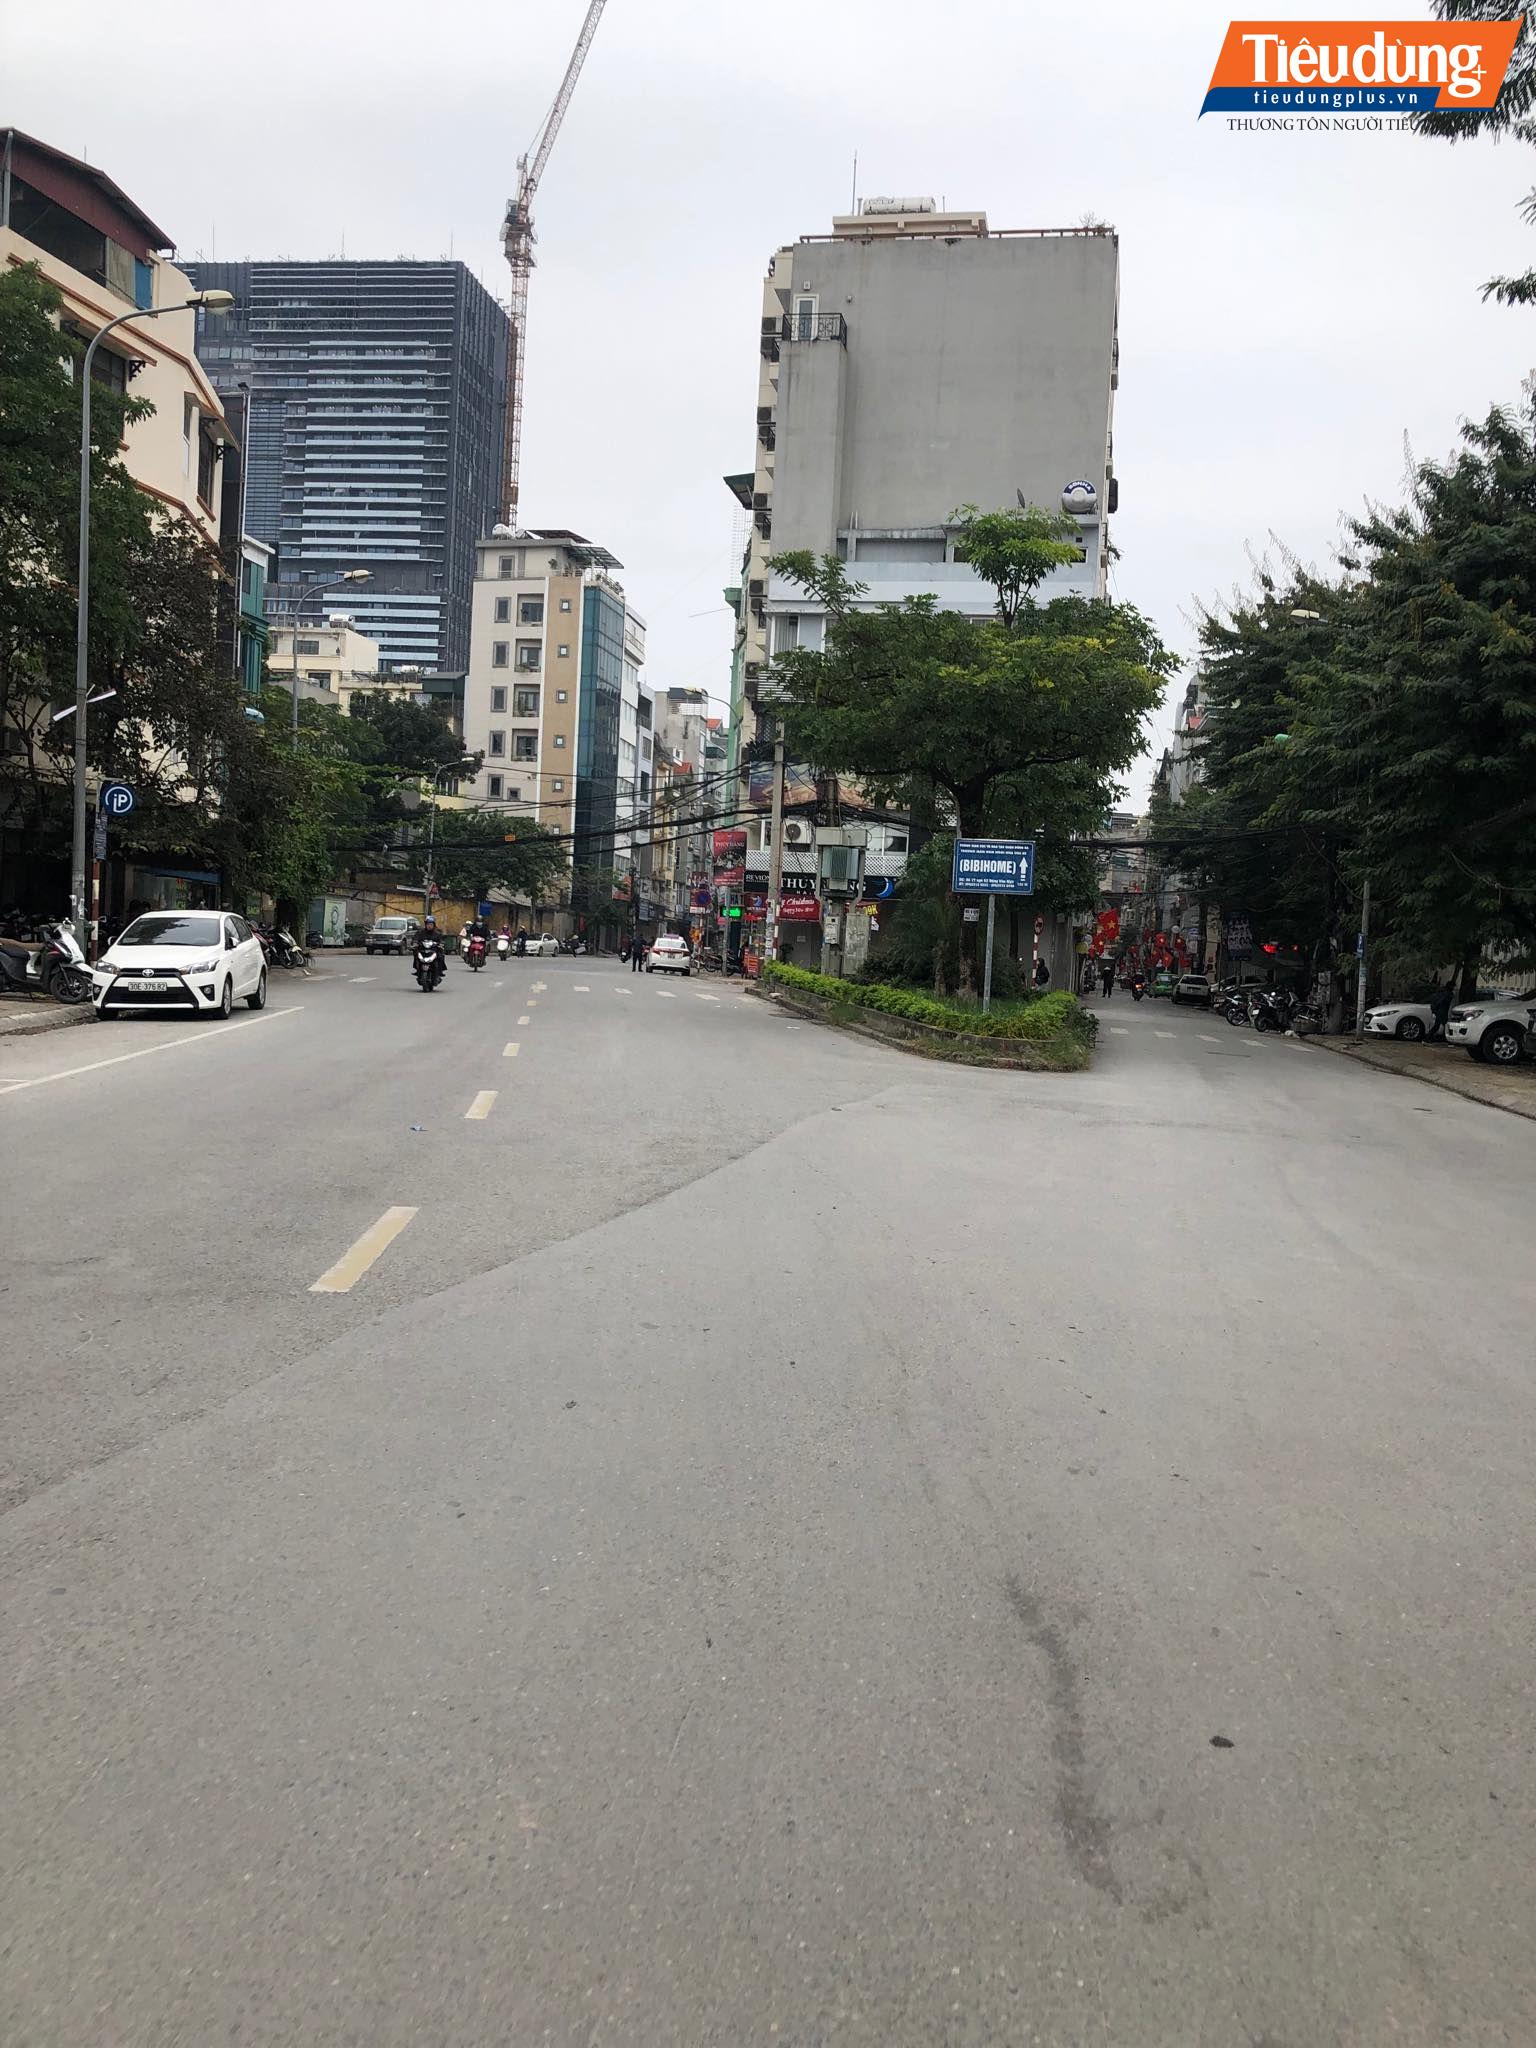 ... đường phố Hà Nội buổi sáng đầu tiên của năm mới 2019 lại vắng vẻ lạ thường.